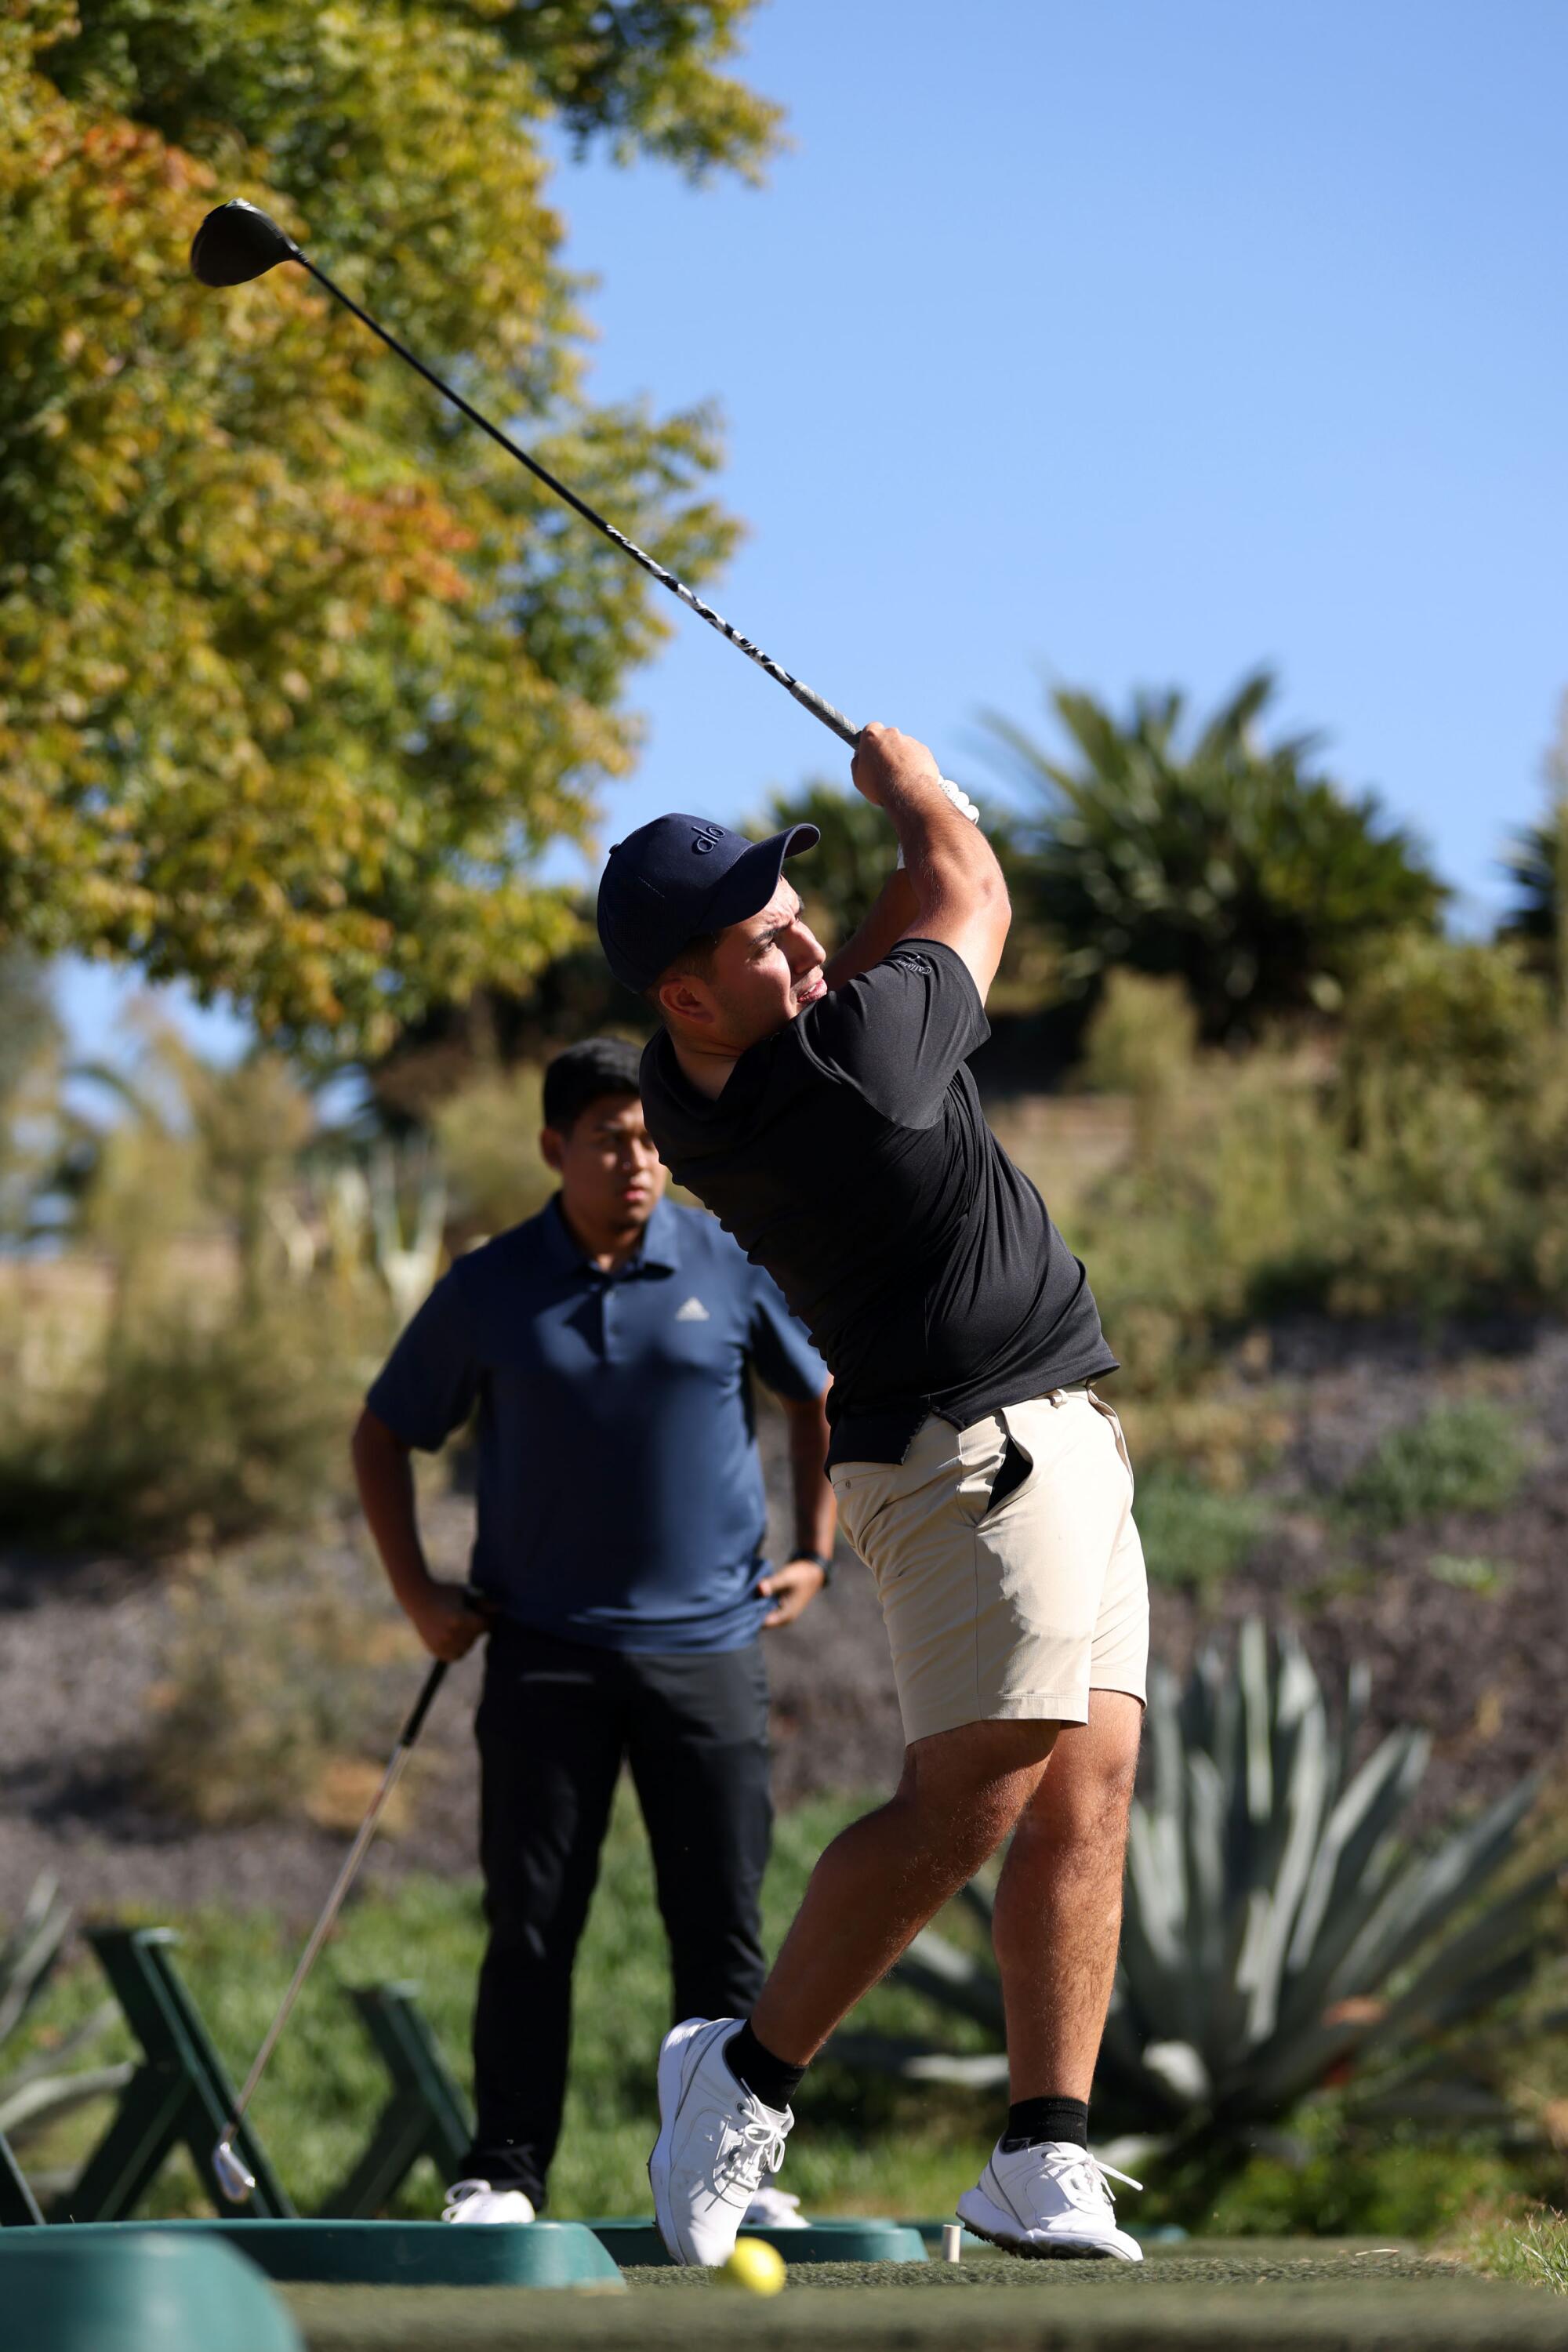 Pedro Tovar de Eslabón Armado comienza a jugar en un campo de golf vistiendo una camiseta negra y pantalón corto blanco.